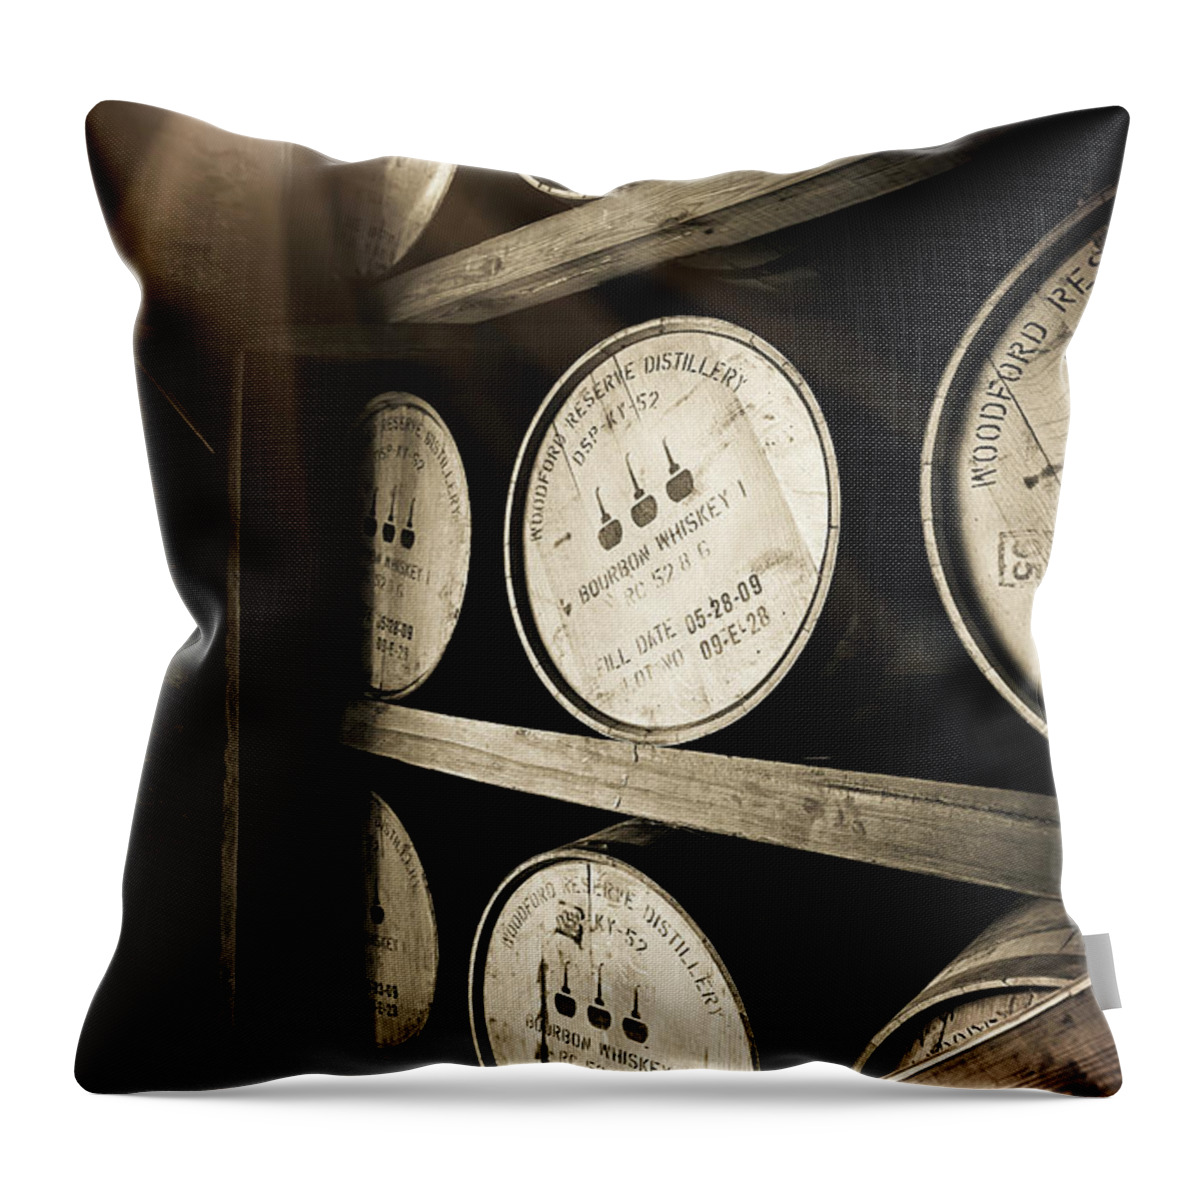 Bourbon Barrel Throw Pillow featuring the photograph Bourbon Barrels by Window Light by Karen Varnas